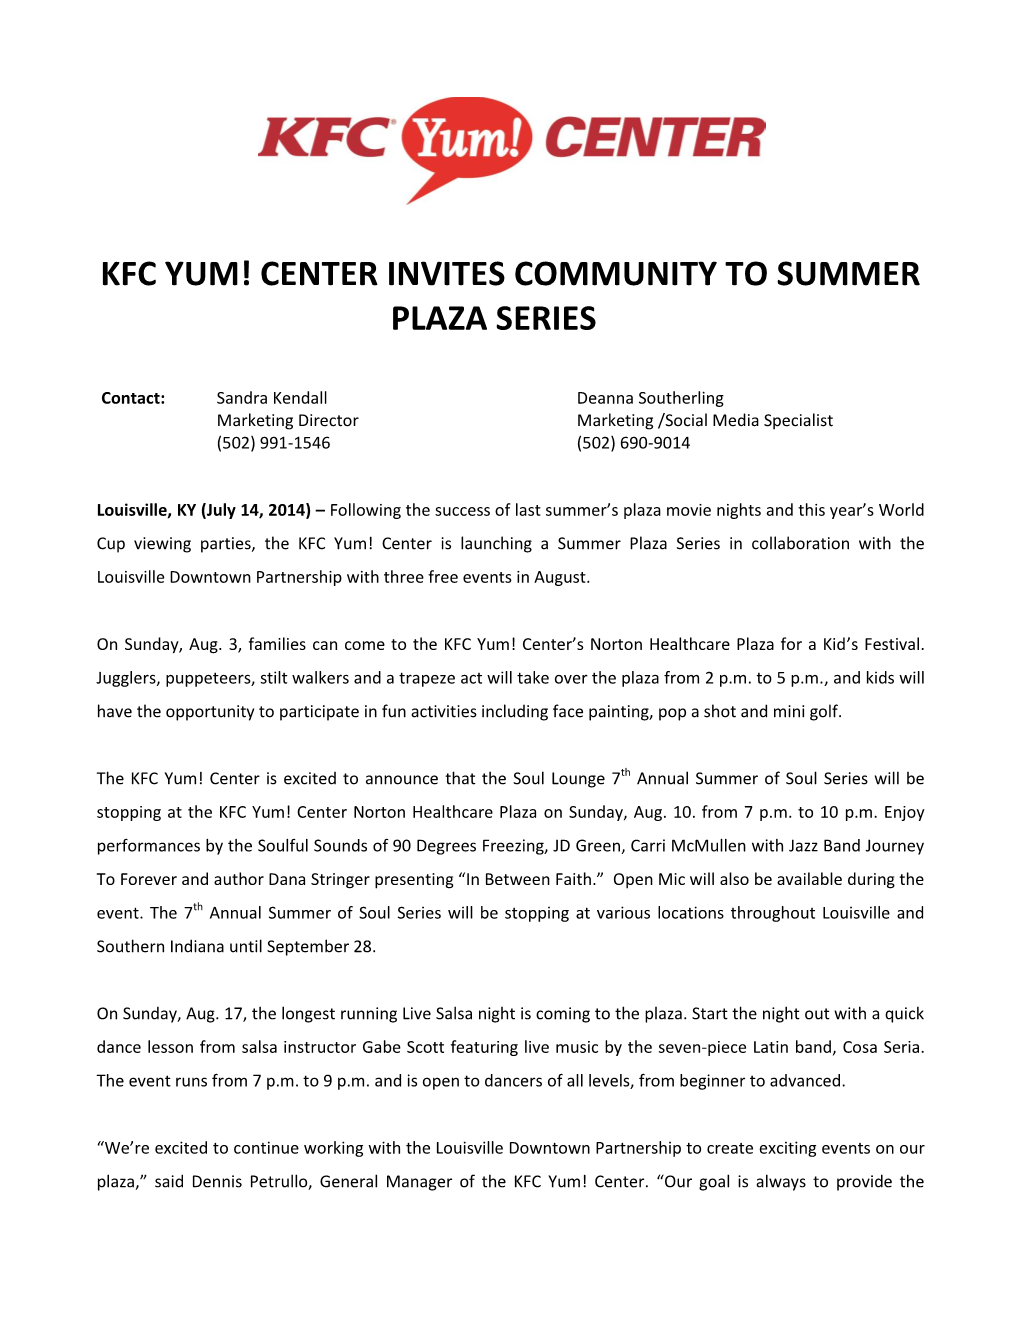 Kfc Yum! Center Invites Community to Summer Plaza Series